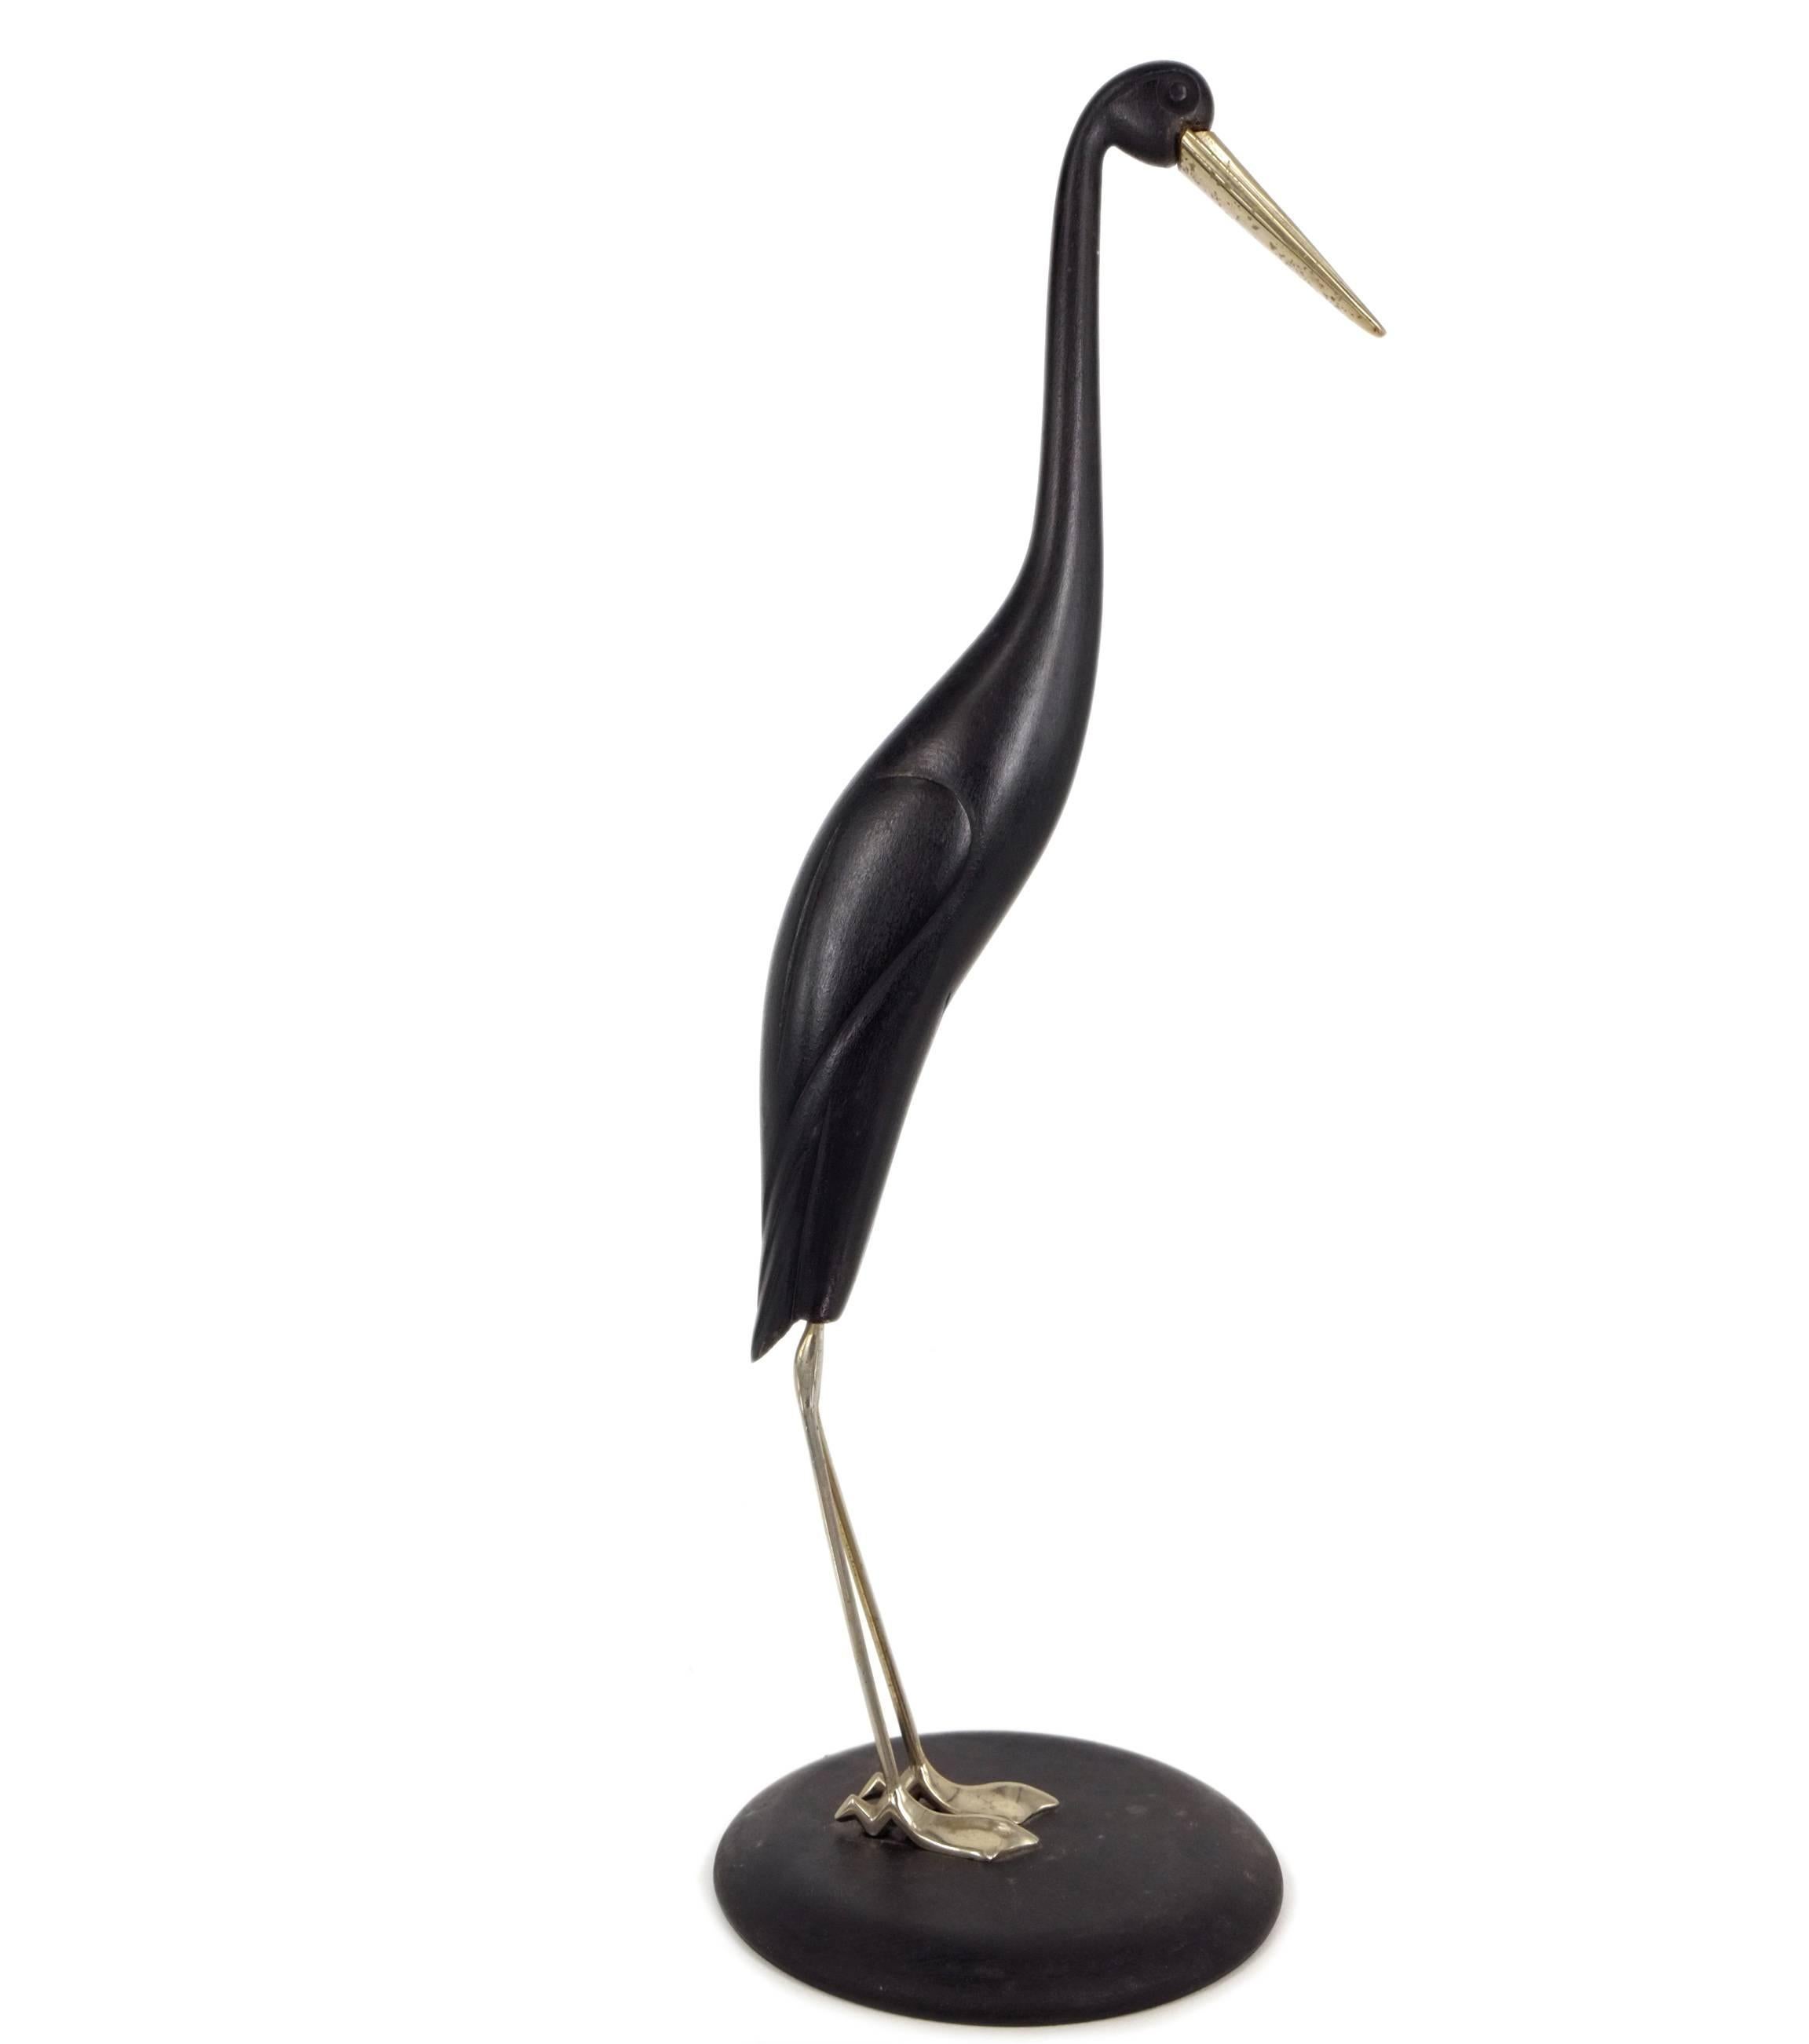 Crane - Brass, Wood, Black, Animal, Vienna, Mid 20th Century, Art Nouveau - Sculpture by Karl Hagenauer